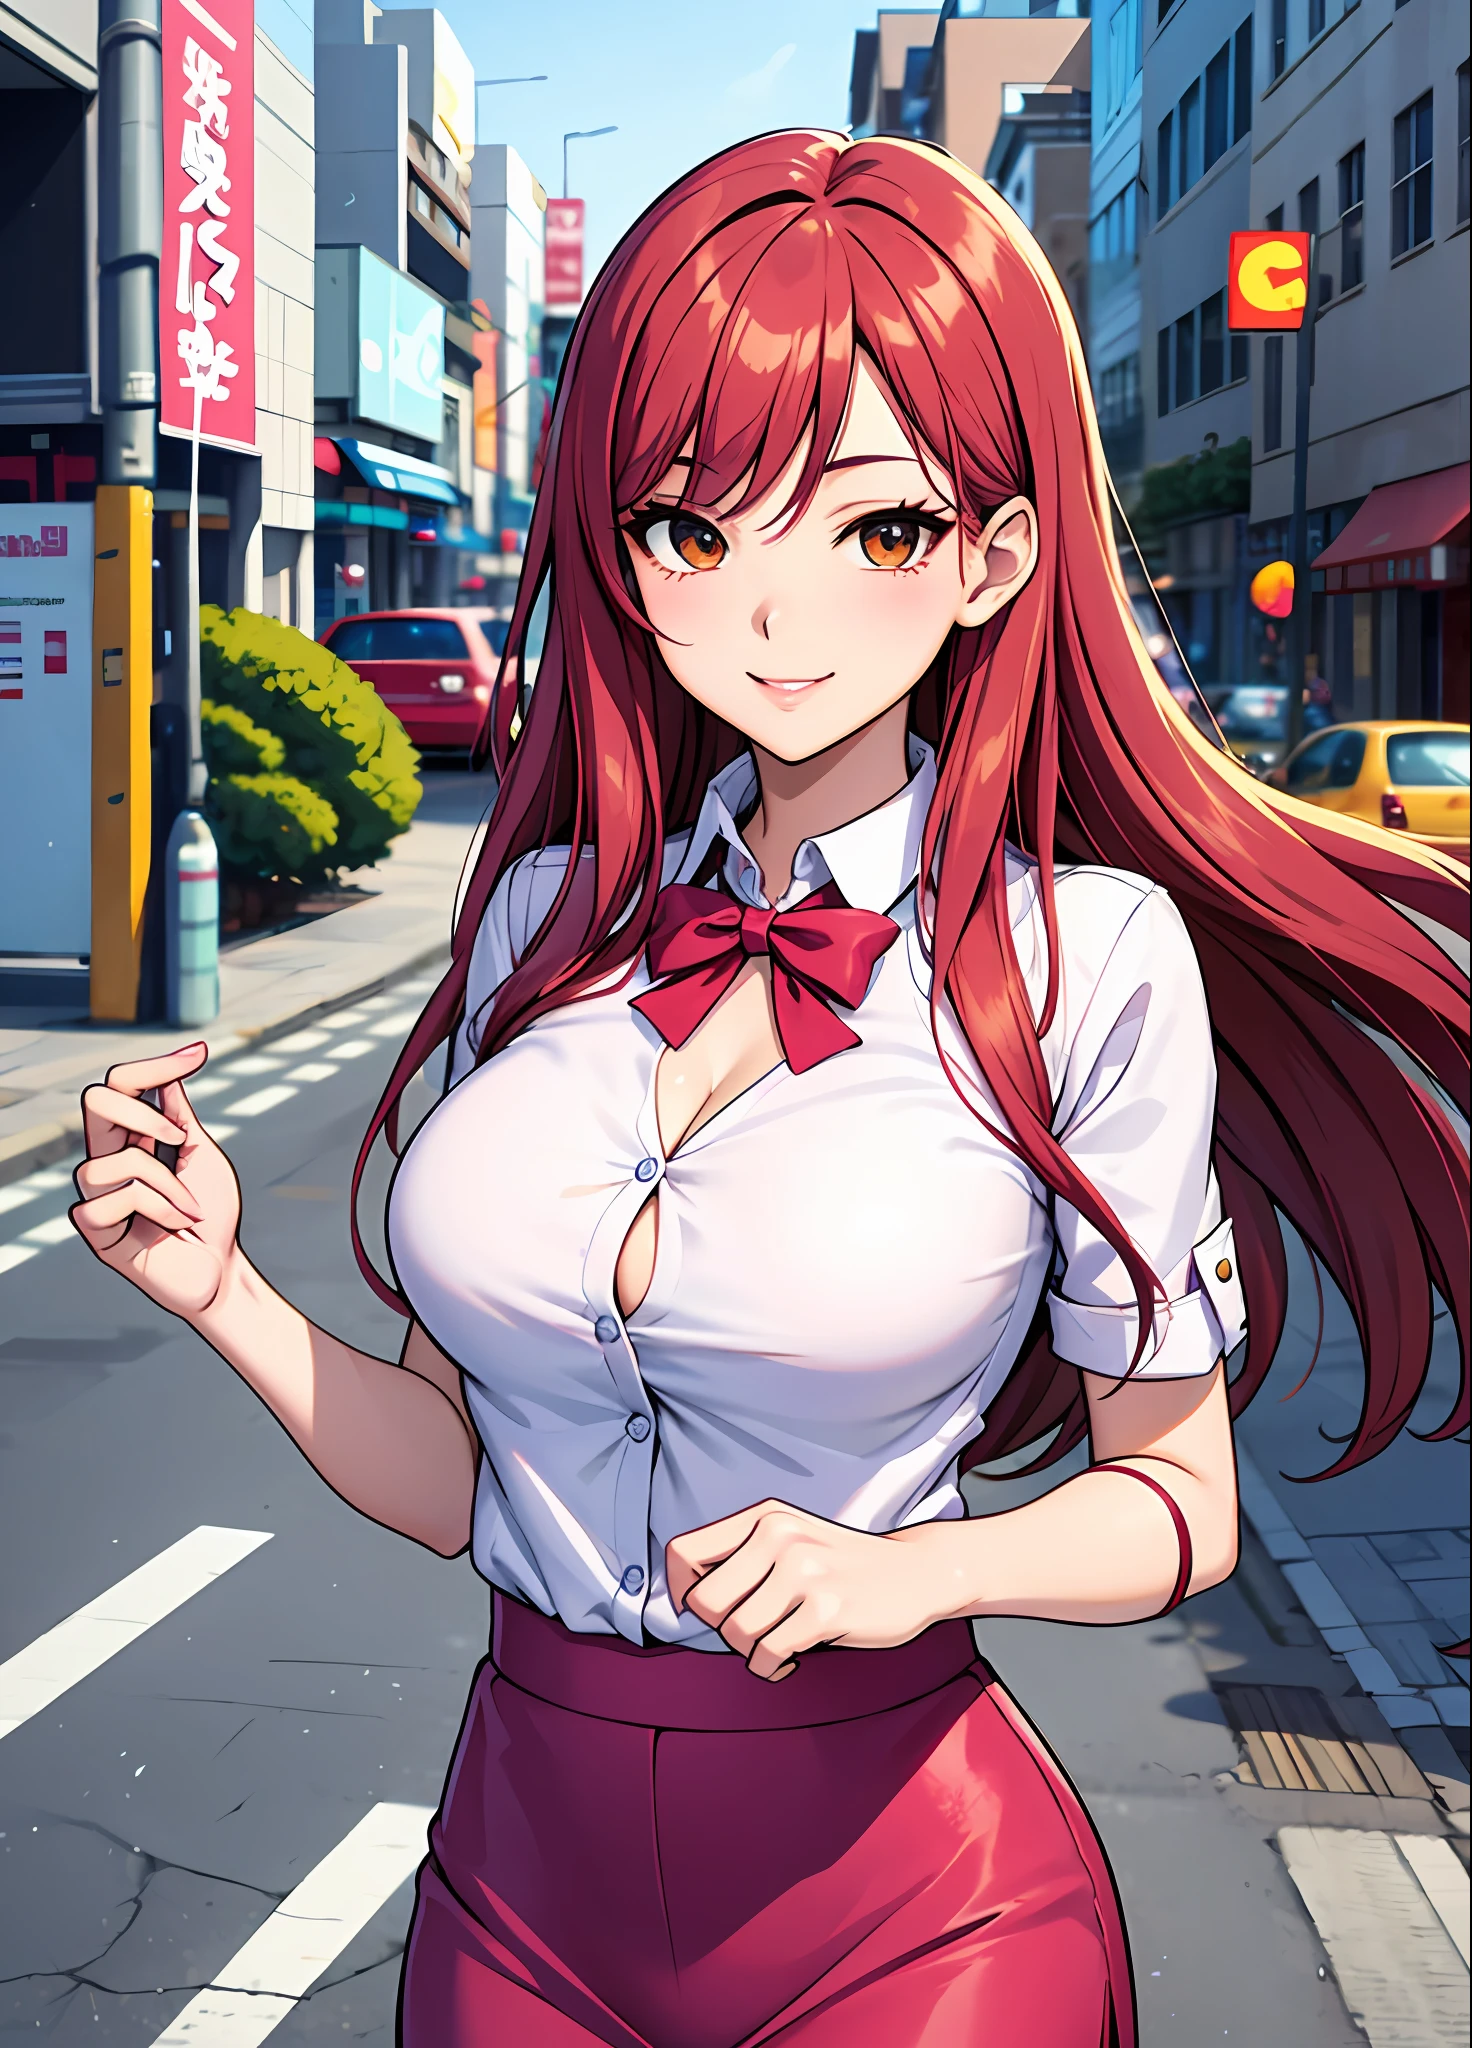 Junge Frau 29 Jahre: 1.3, Lachsfarbenes Haar erfüllt: 1.2, groß: 1.2, Beruf: 1.2, Tageszeit: 1.2, Auf der Strasse: 1.2, Filmbeleuchtung, beste Qualität, 8k ein Cartoon-Mädchen mit langen roten Haaren und einem rosa Oberteil, haruno sakura, provokantes Lächeln, Shoujo Manga, Ecchi-Anime-Stil, manhwa,definierter Körper, Büro Uniform, große Brüste